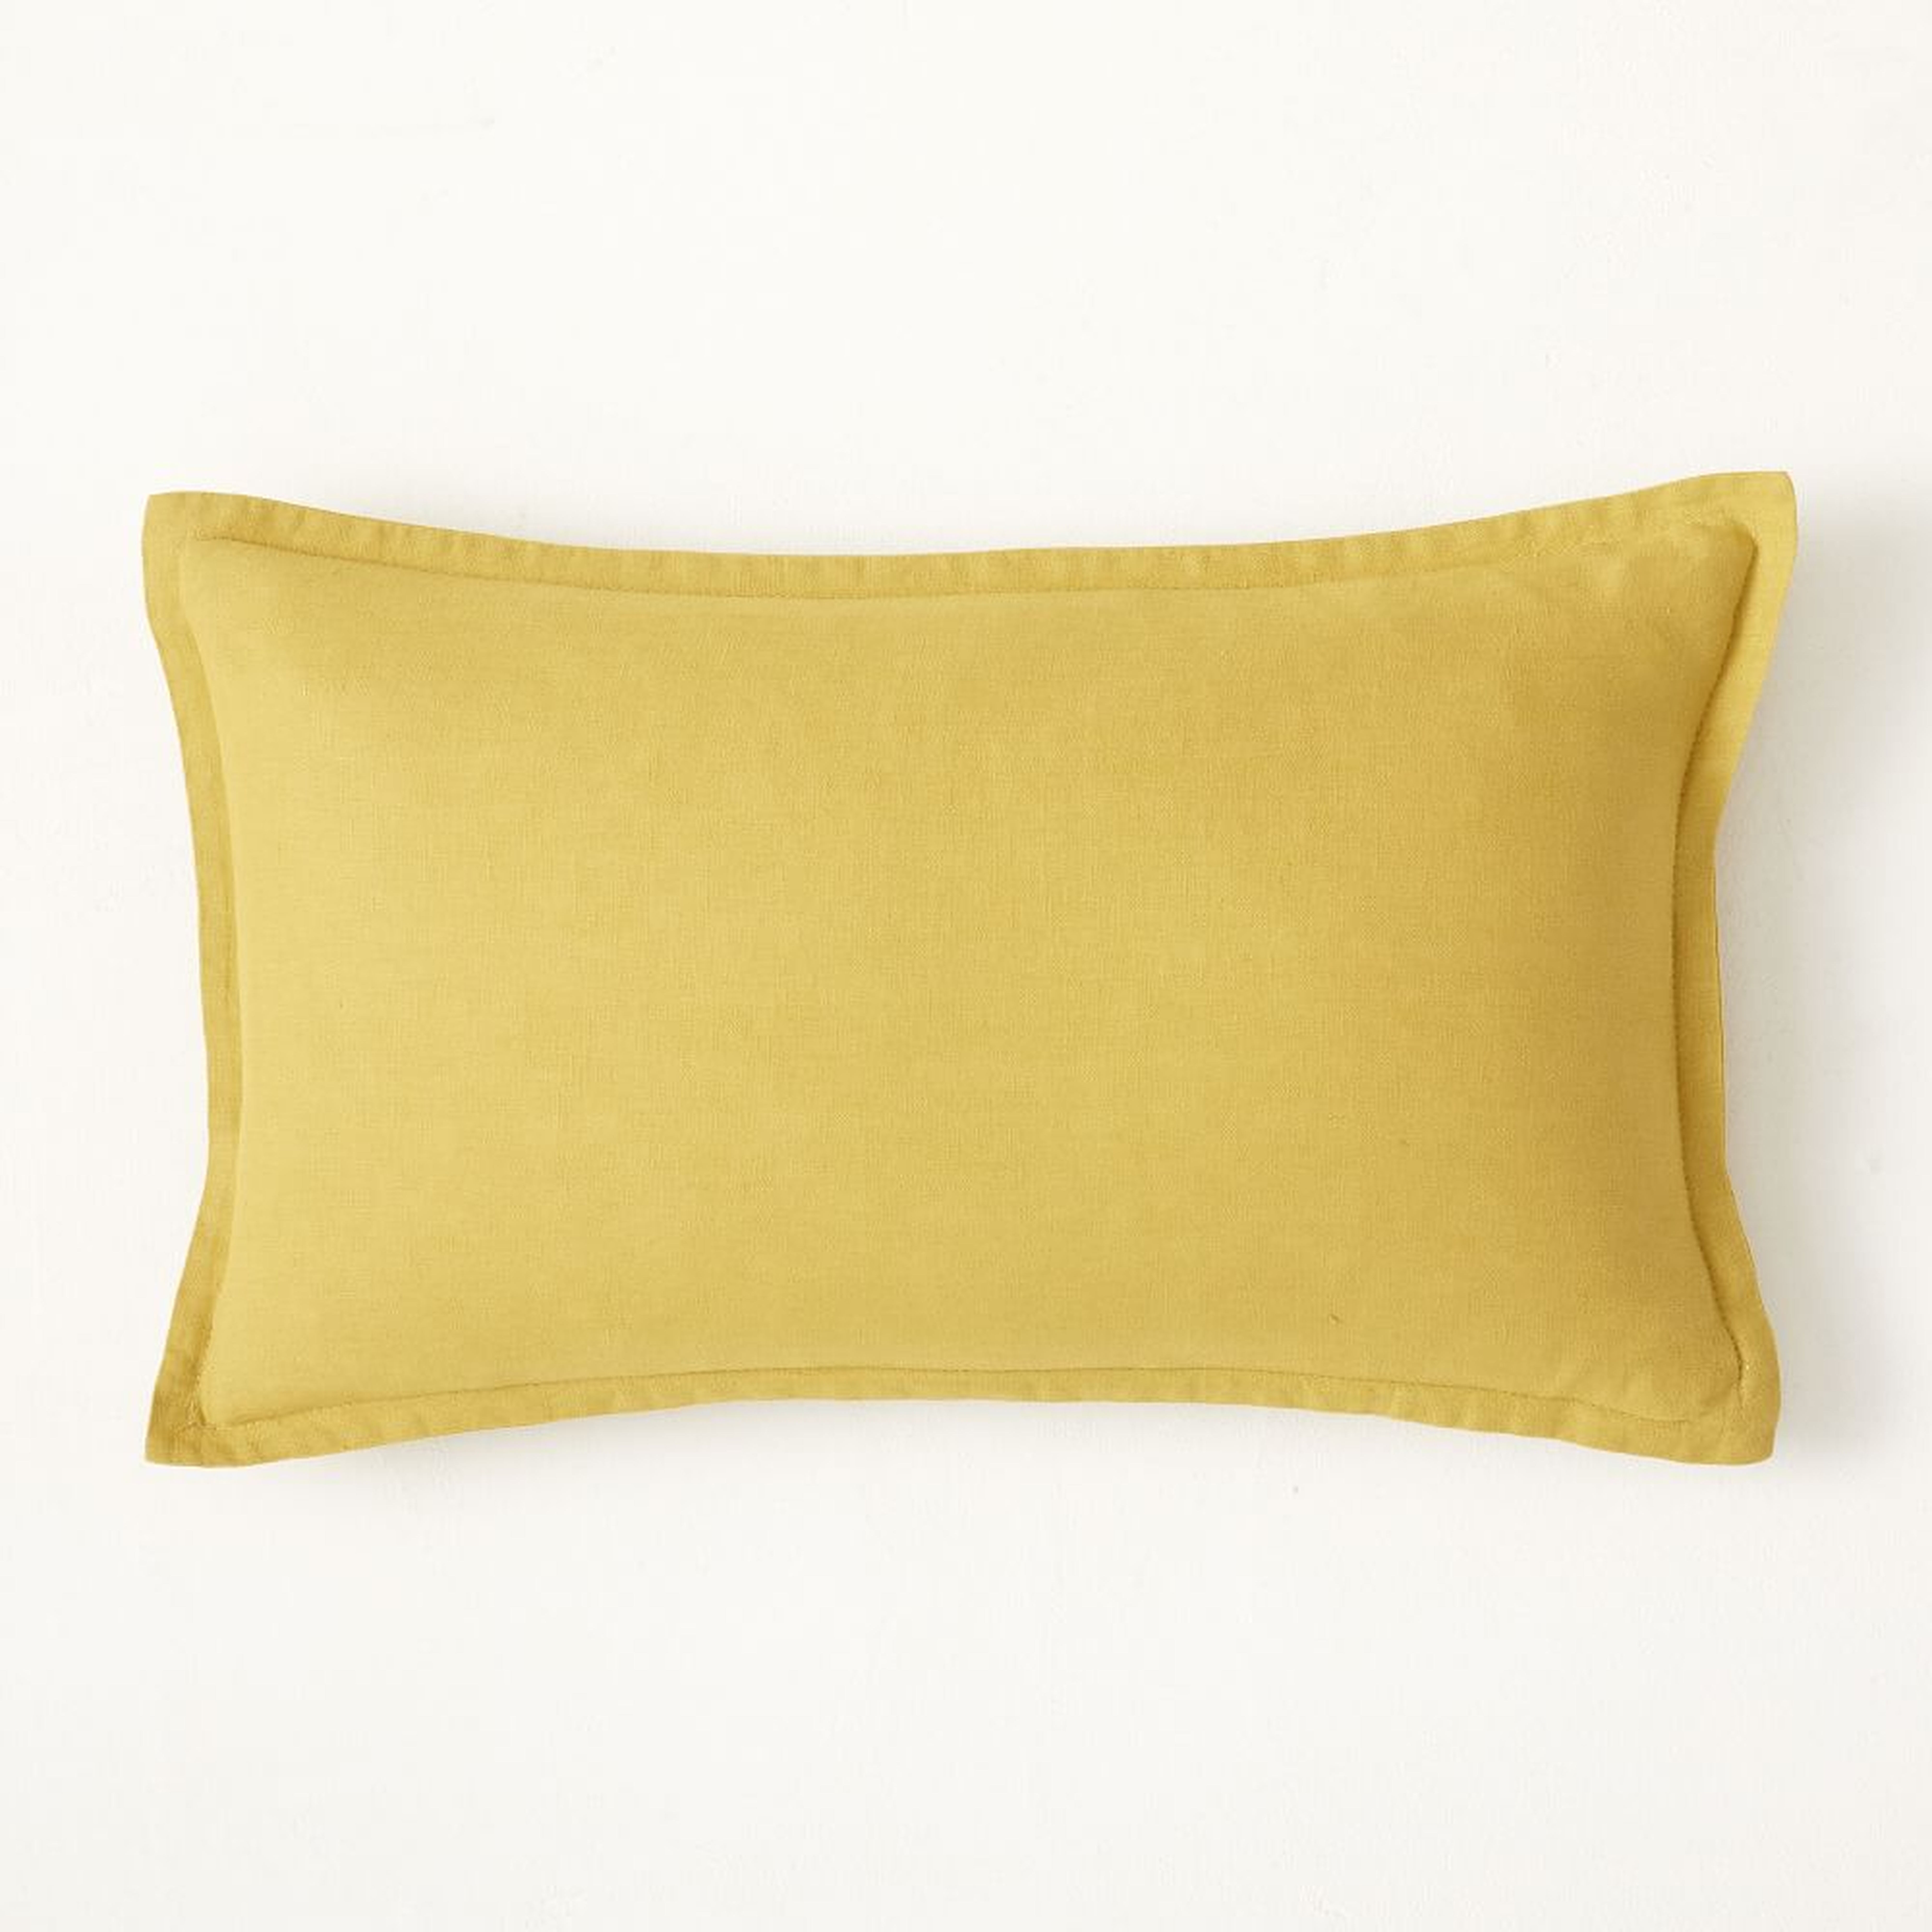 European Flax Linen Pillow Cover, 12"x21", Dijon - West Elm